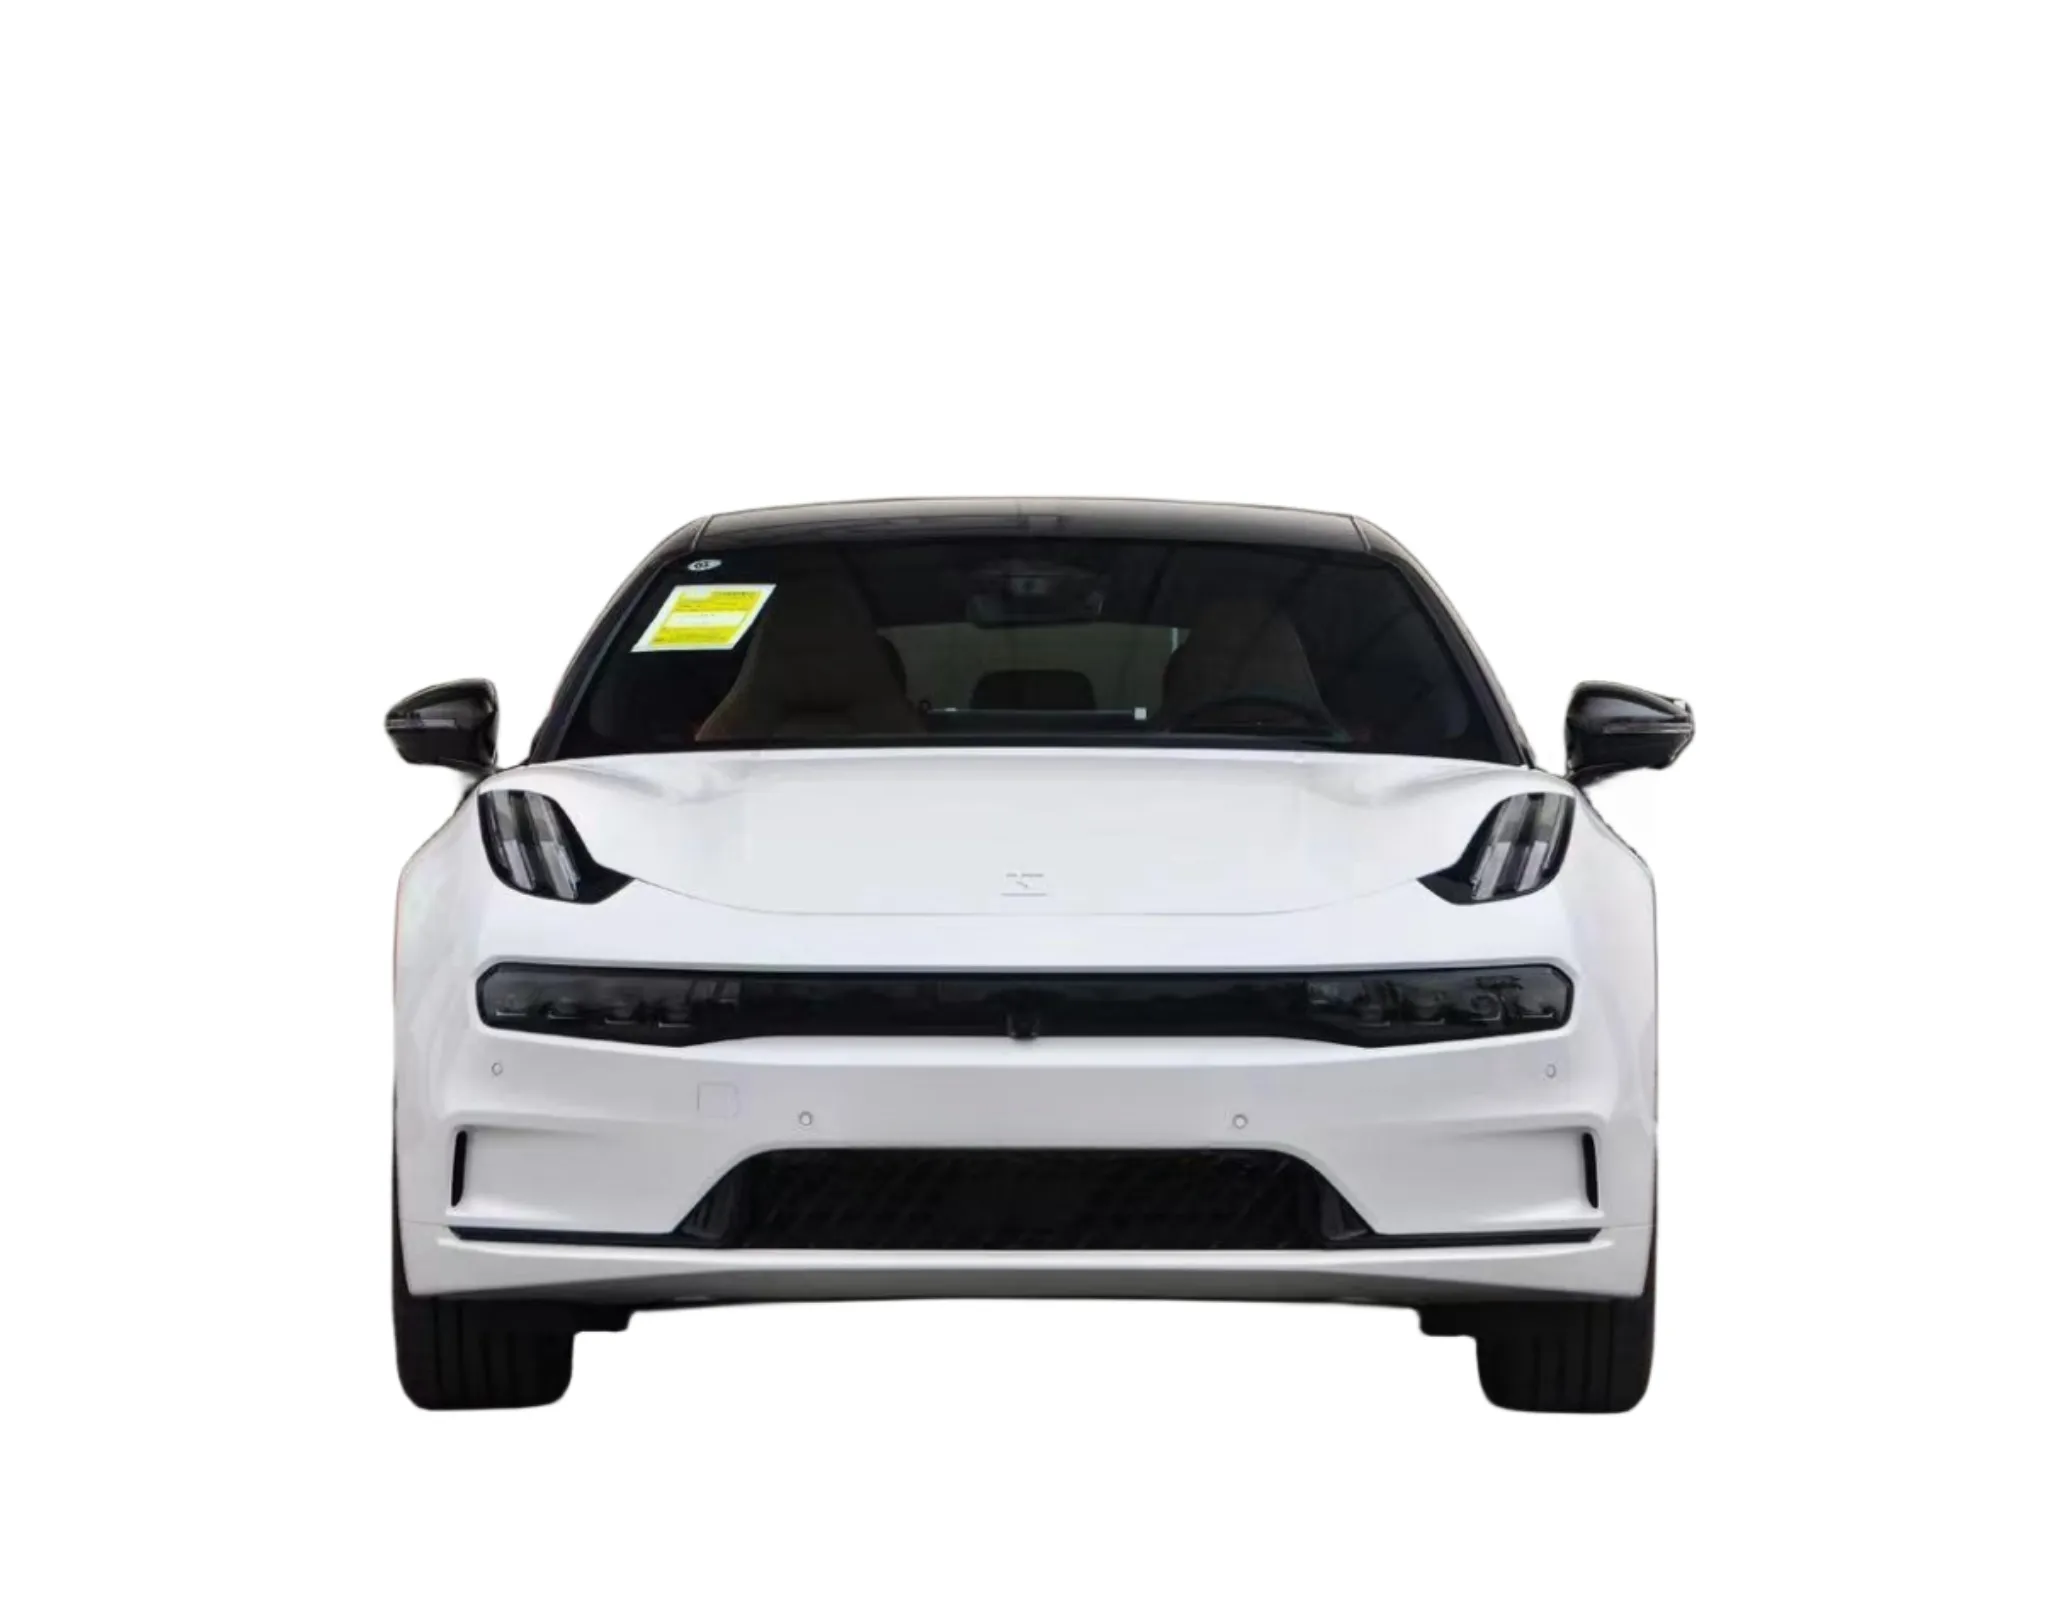 سيارة جيلي زدكر 001 للدفع الرباعي 2023 إصدار 100 كيلو وات بالساعة 656 كم سيارة فاخرة منخفضة السعر عالية المدى ومنخفضة المسافات سيارات سيارة كهربائية سيارات مستعملة